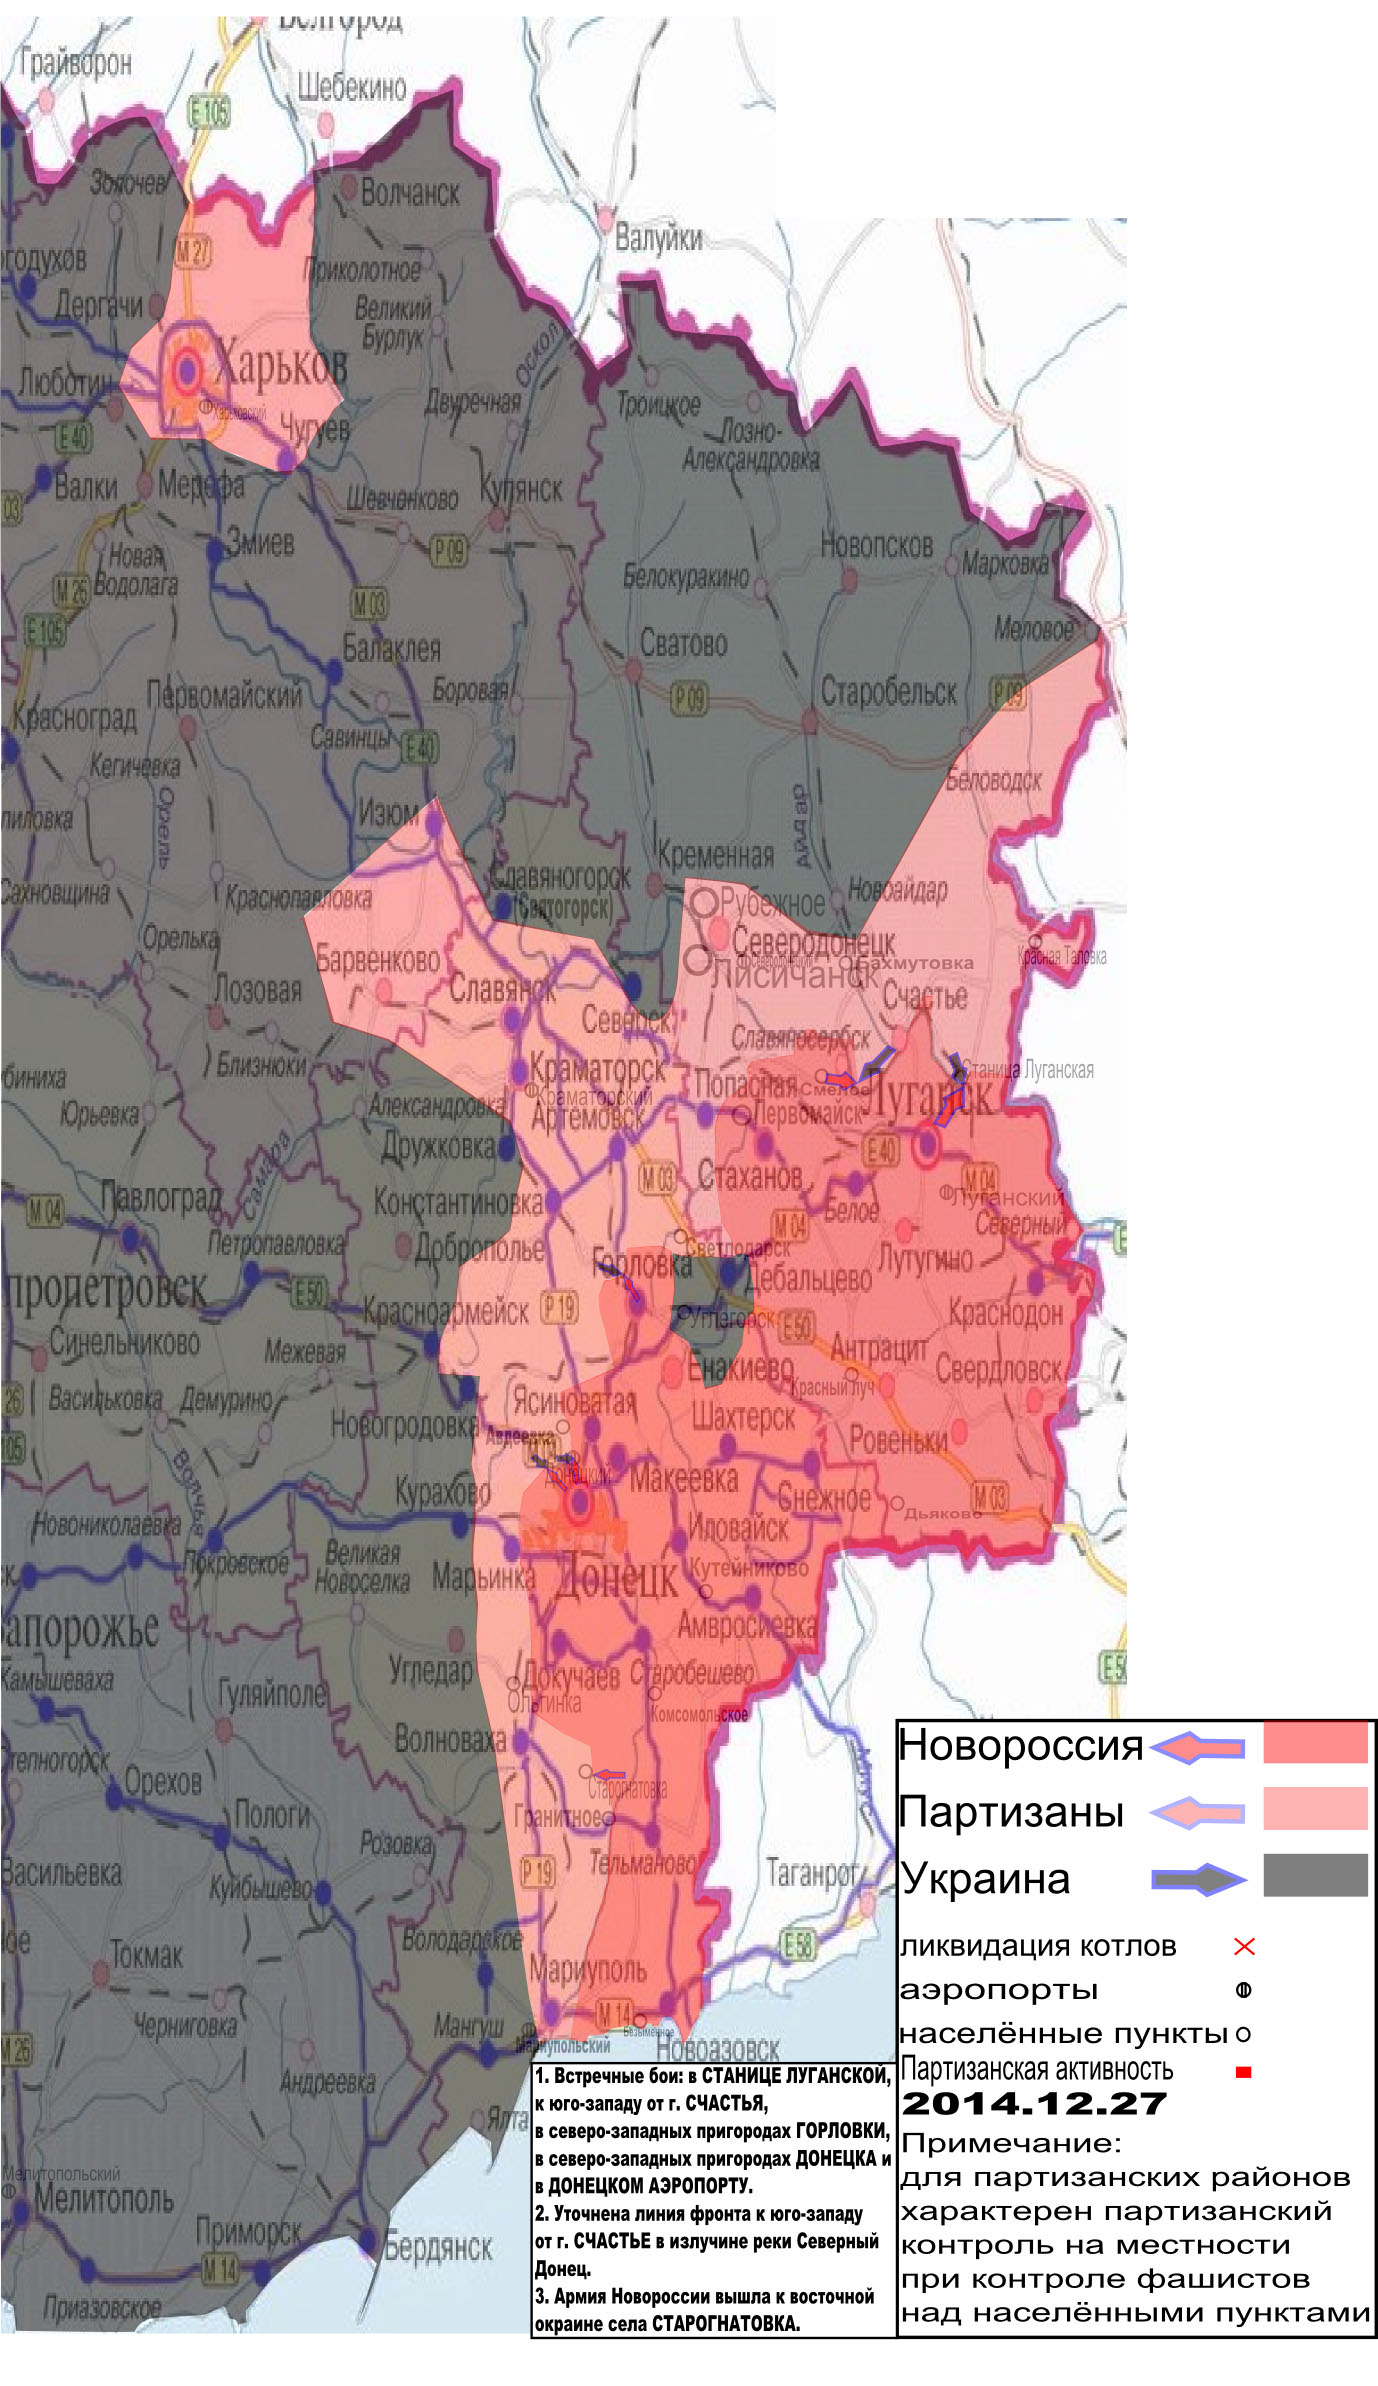 Карта боевых действий и событий в Новороссии с обозначением зон партизанской активности за 27 декабря 2014.